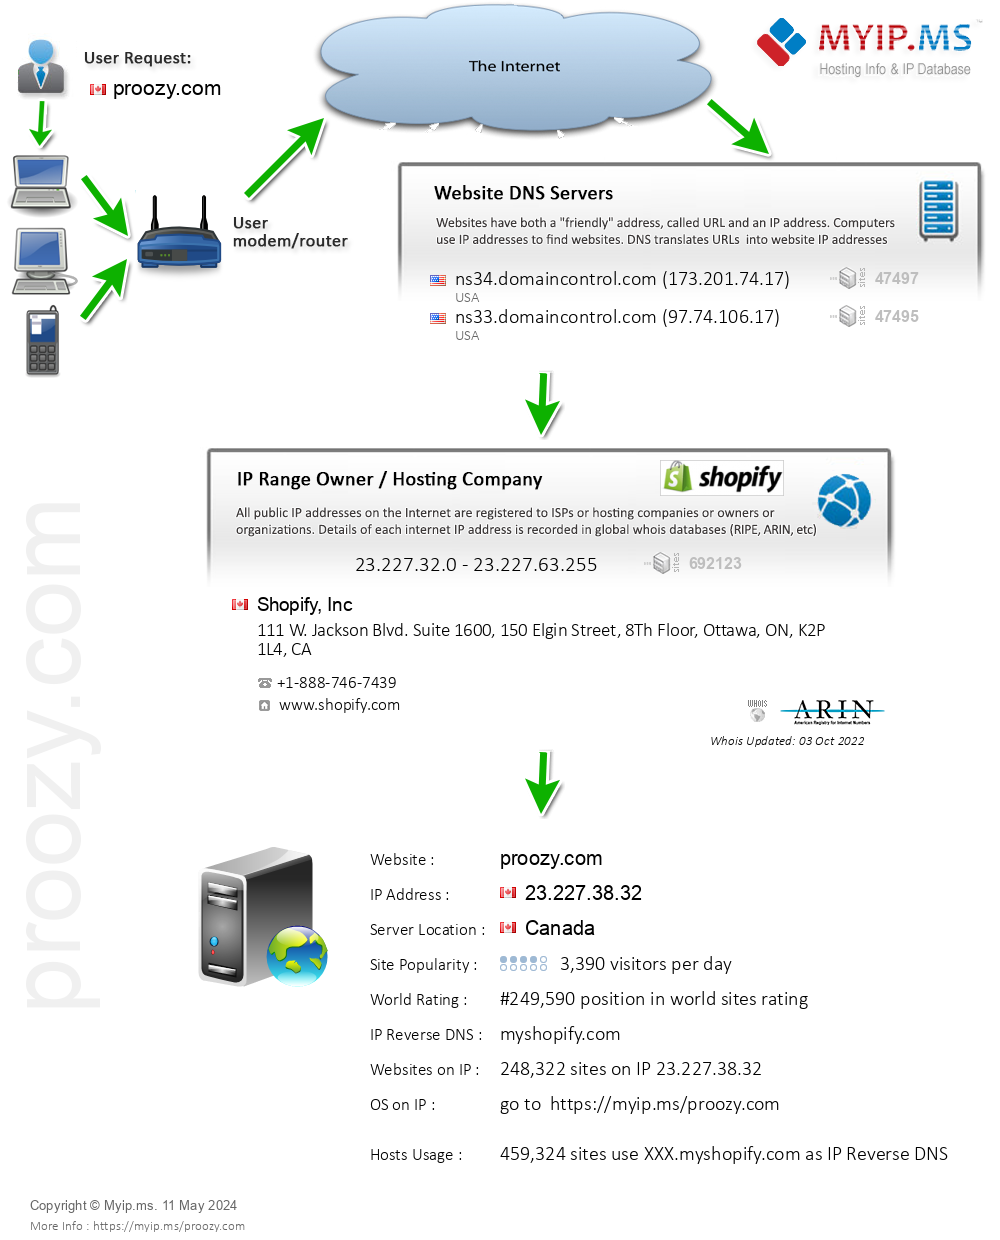 Proozy.com - Website Hosting Visual IP Diagram